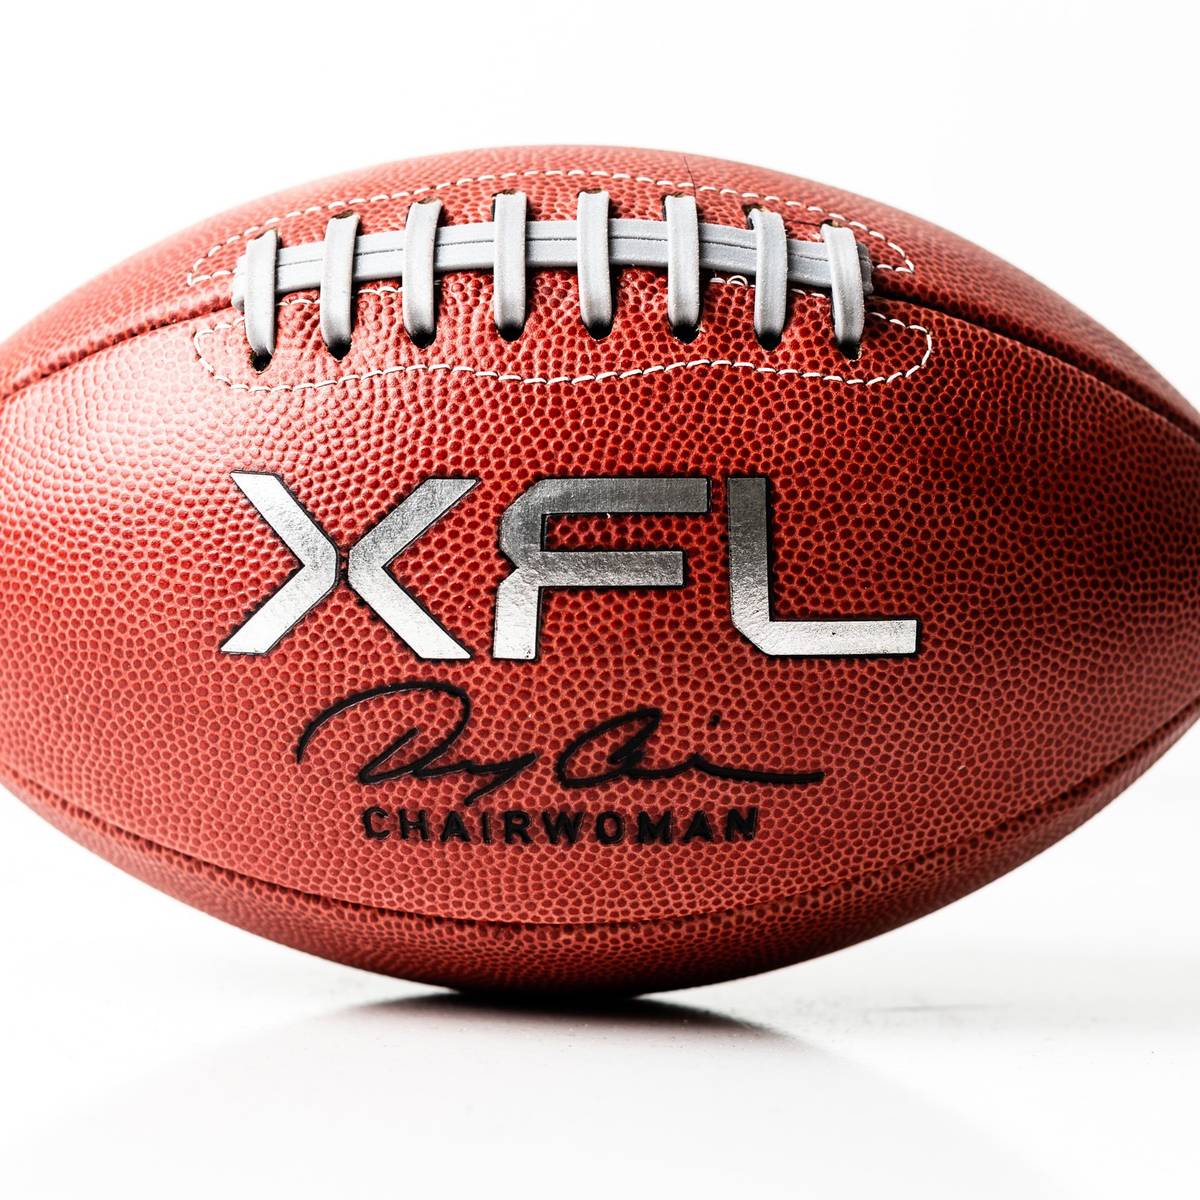 Nach dem Super Bowl ist vor der XFL Der Saisonstart der neuen American-Football-Liga am Wochenende live auf den SPORT1 Plattformen